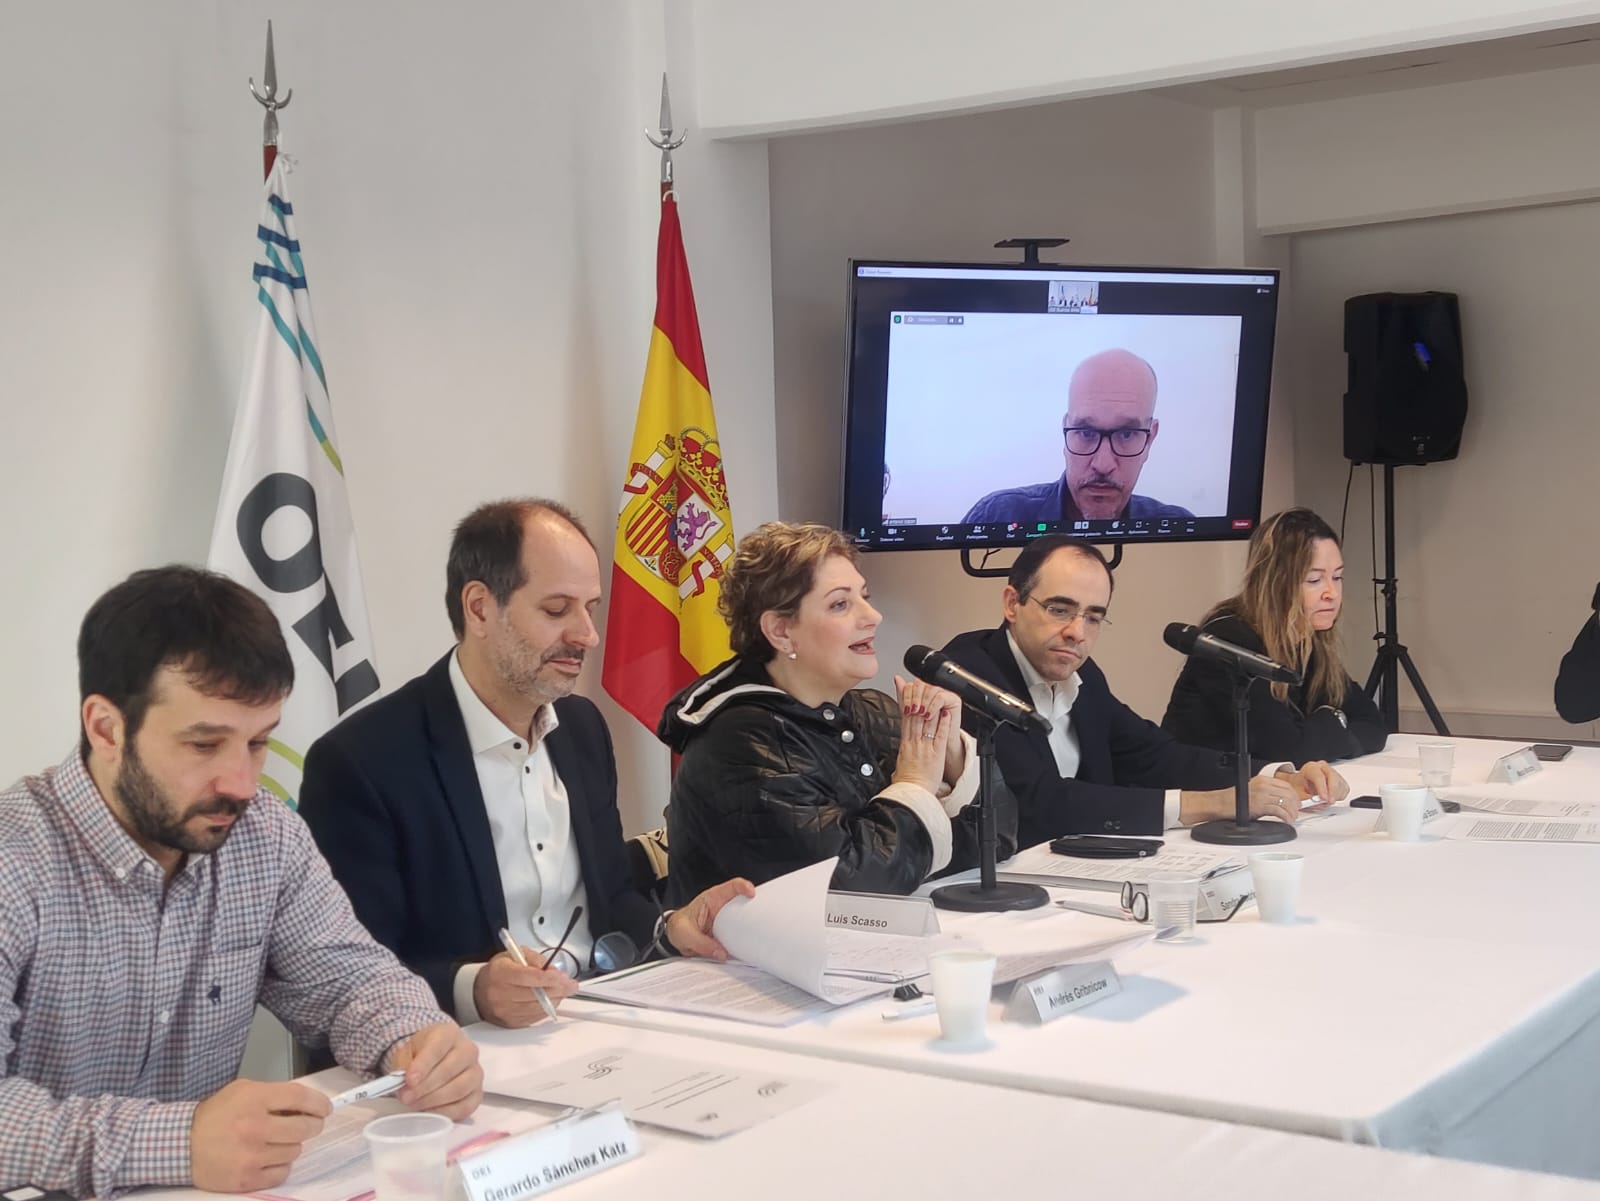 Presentación del estudio: "Intercambio de bienes y servicios de las industrias creativas entre Argentina y España" en la OEI